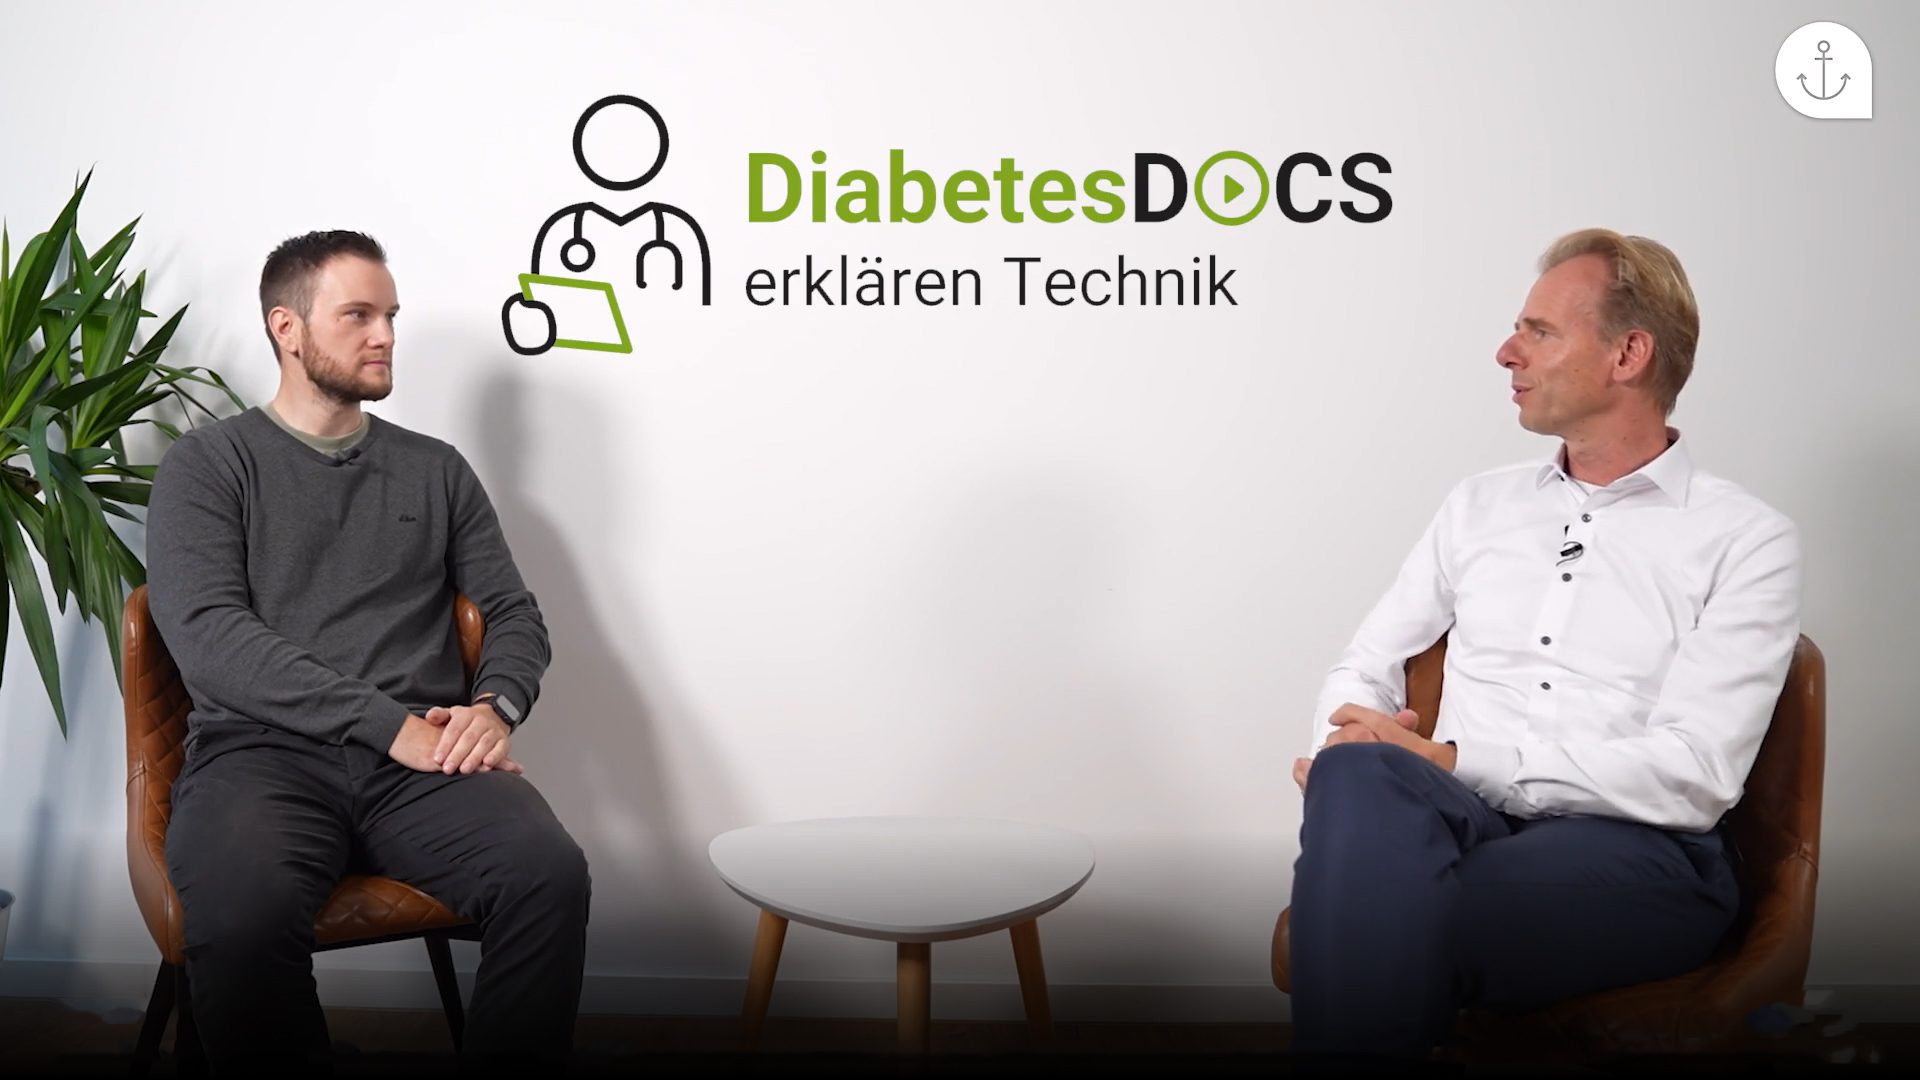 Diabetes-Docs erklären Technik – so läuft die Verordnung von CGM-Systemen ab